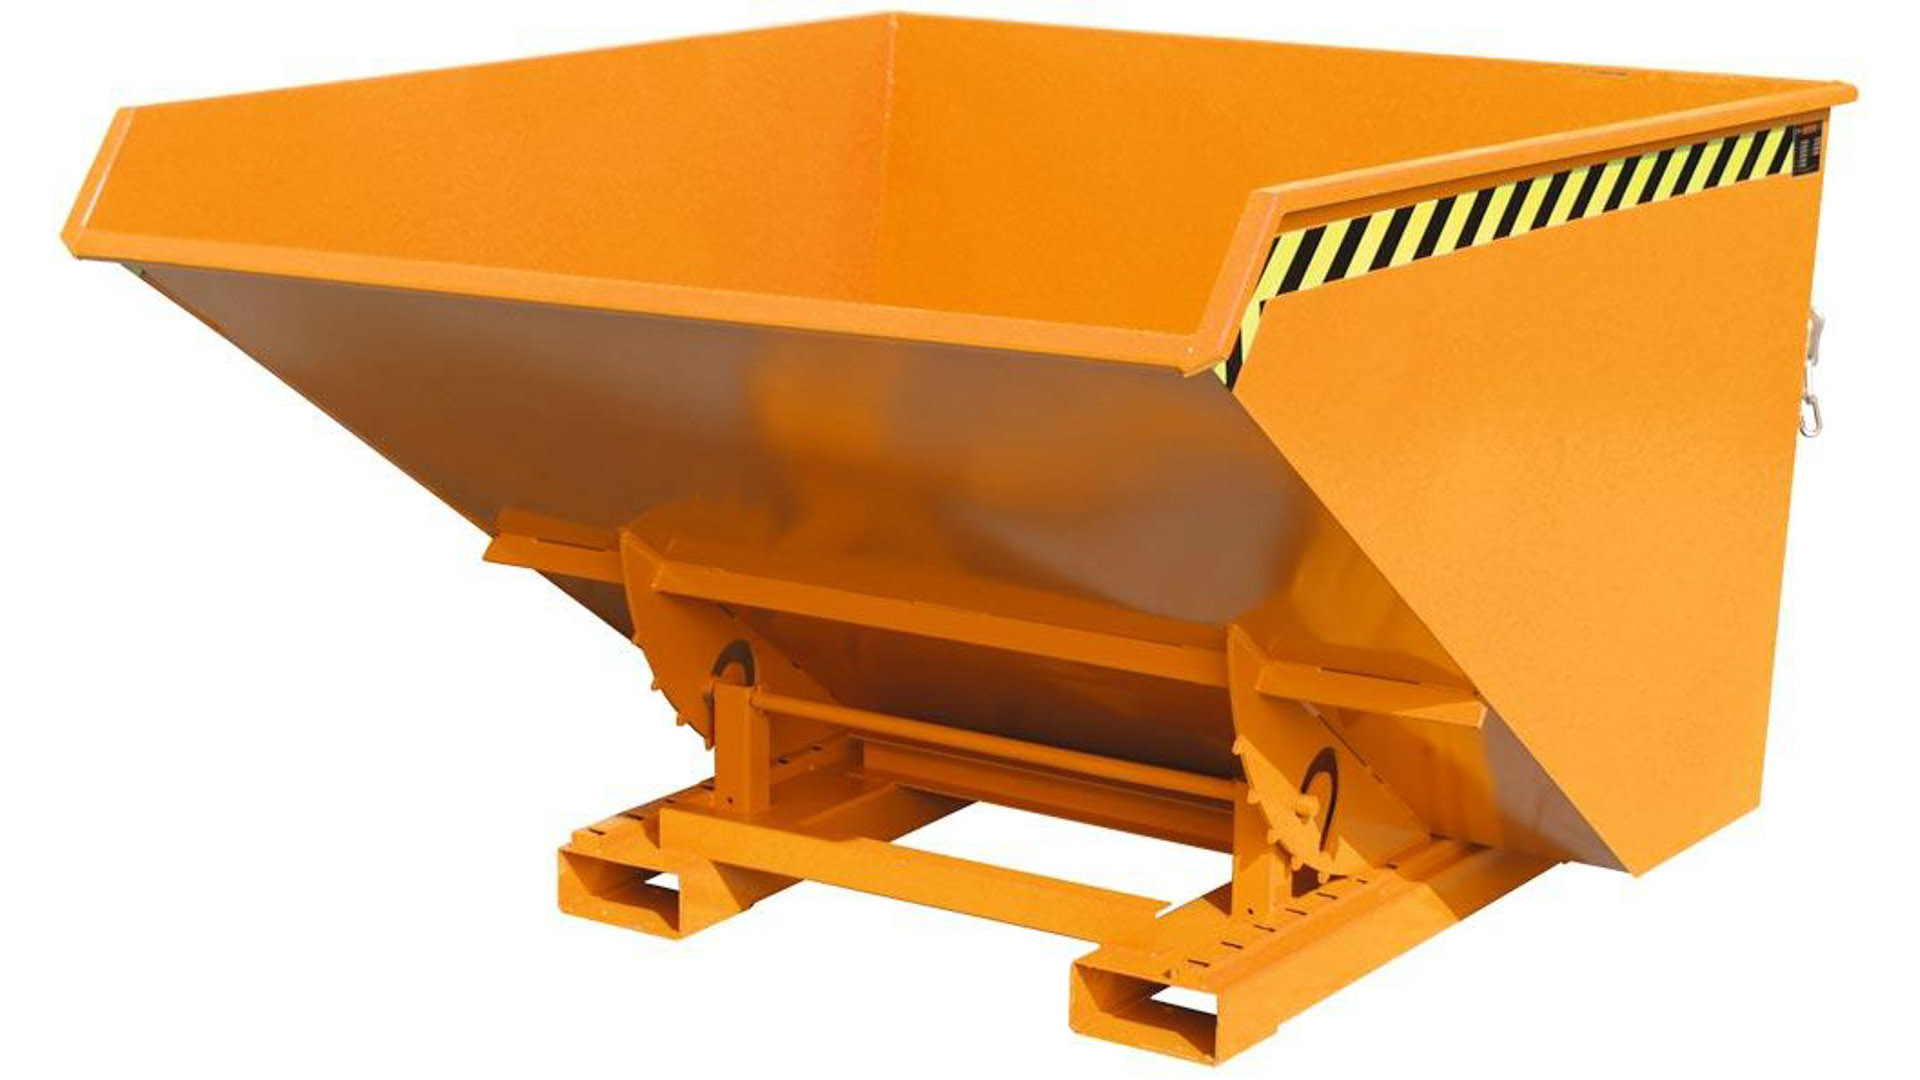 Späne-Selbstkippbehälter mit Abrollsystem, Volumen 0,30 cbm, LxBxH 1260x770x835 mm, lackiert RAL 2000 orange